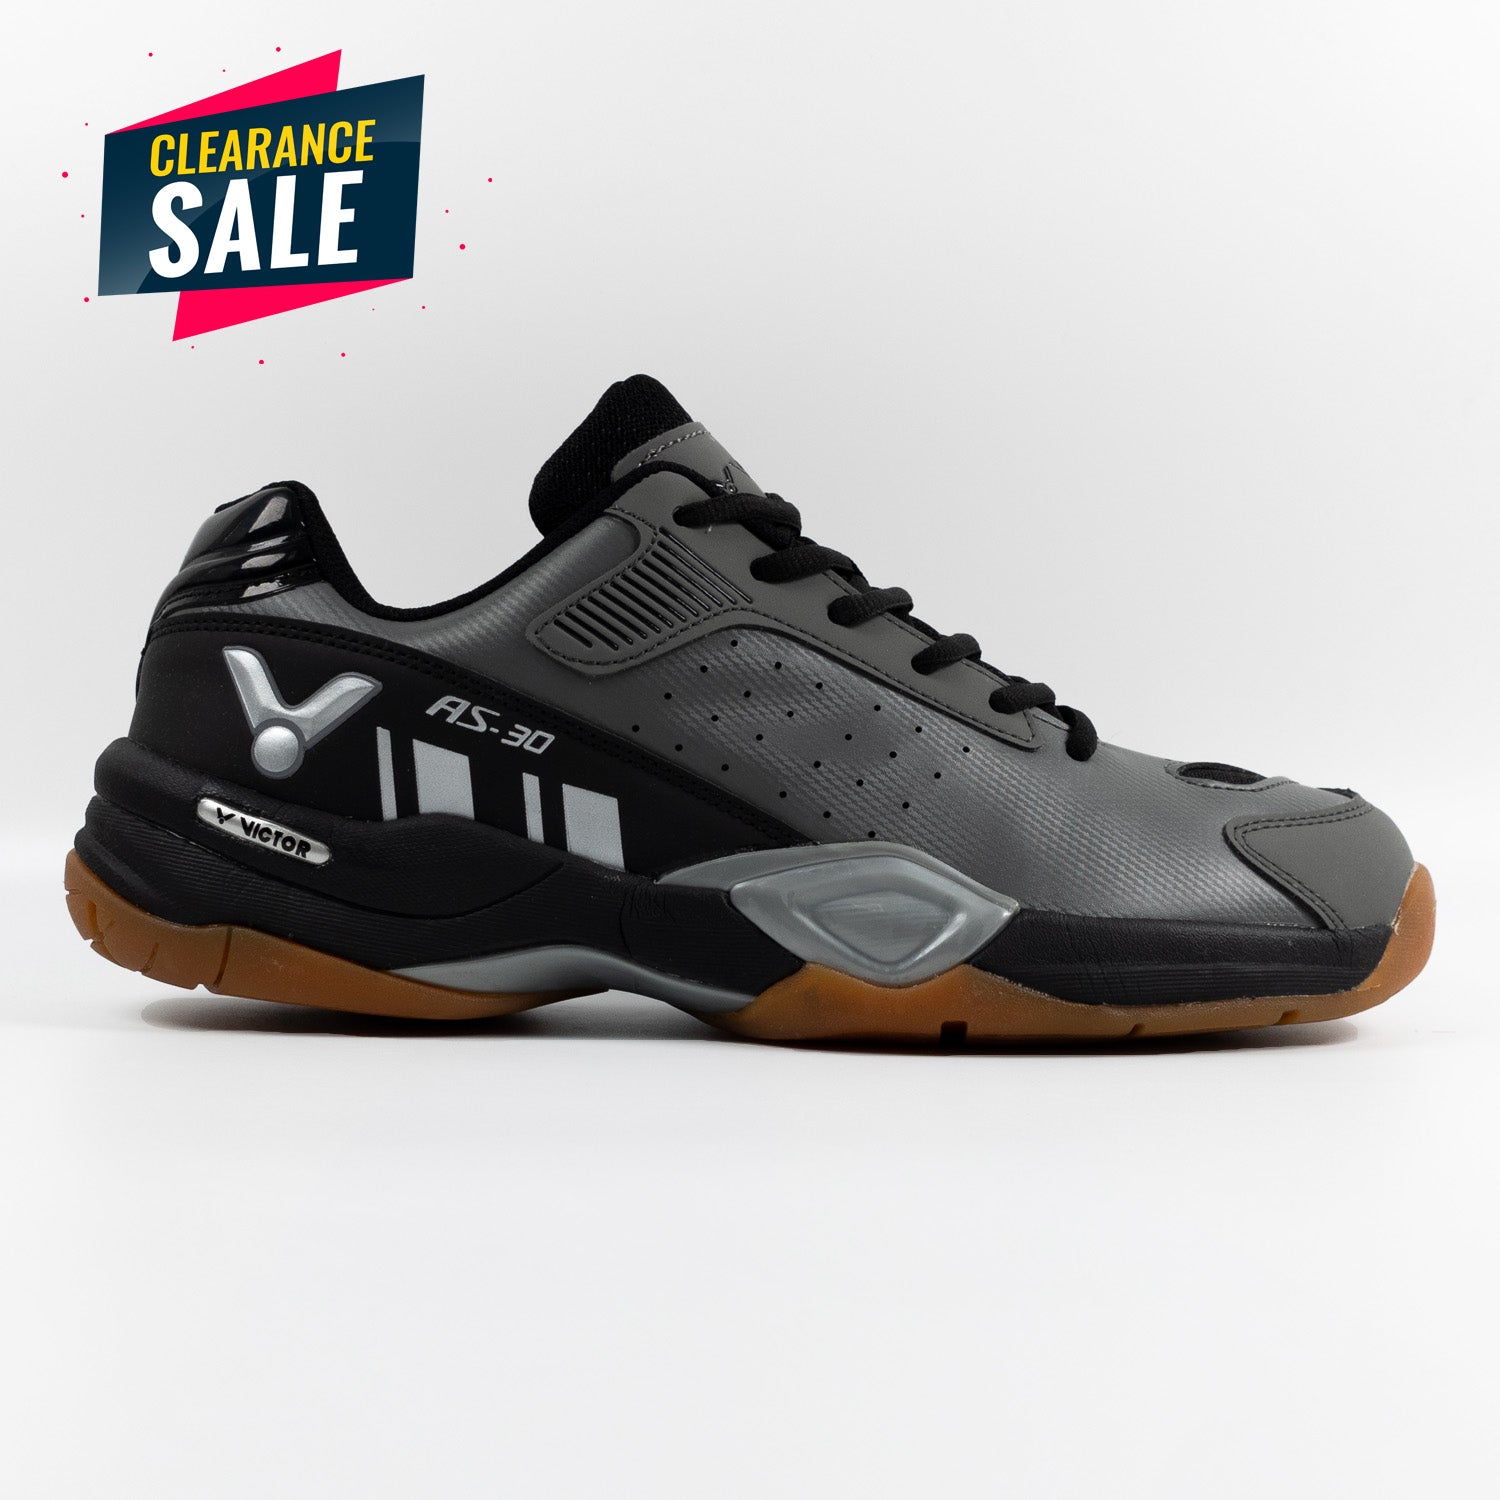 Victor AS 30H Badminton Shoes (Metal Grey)